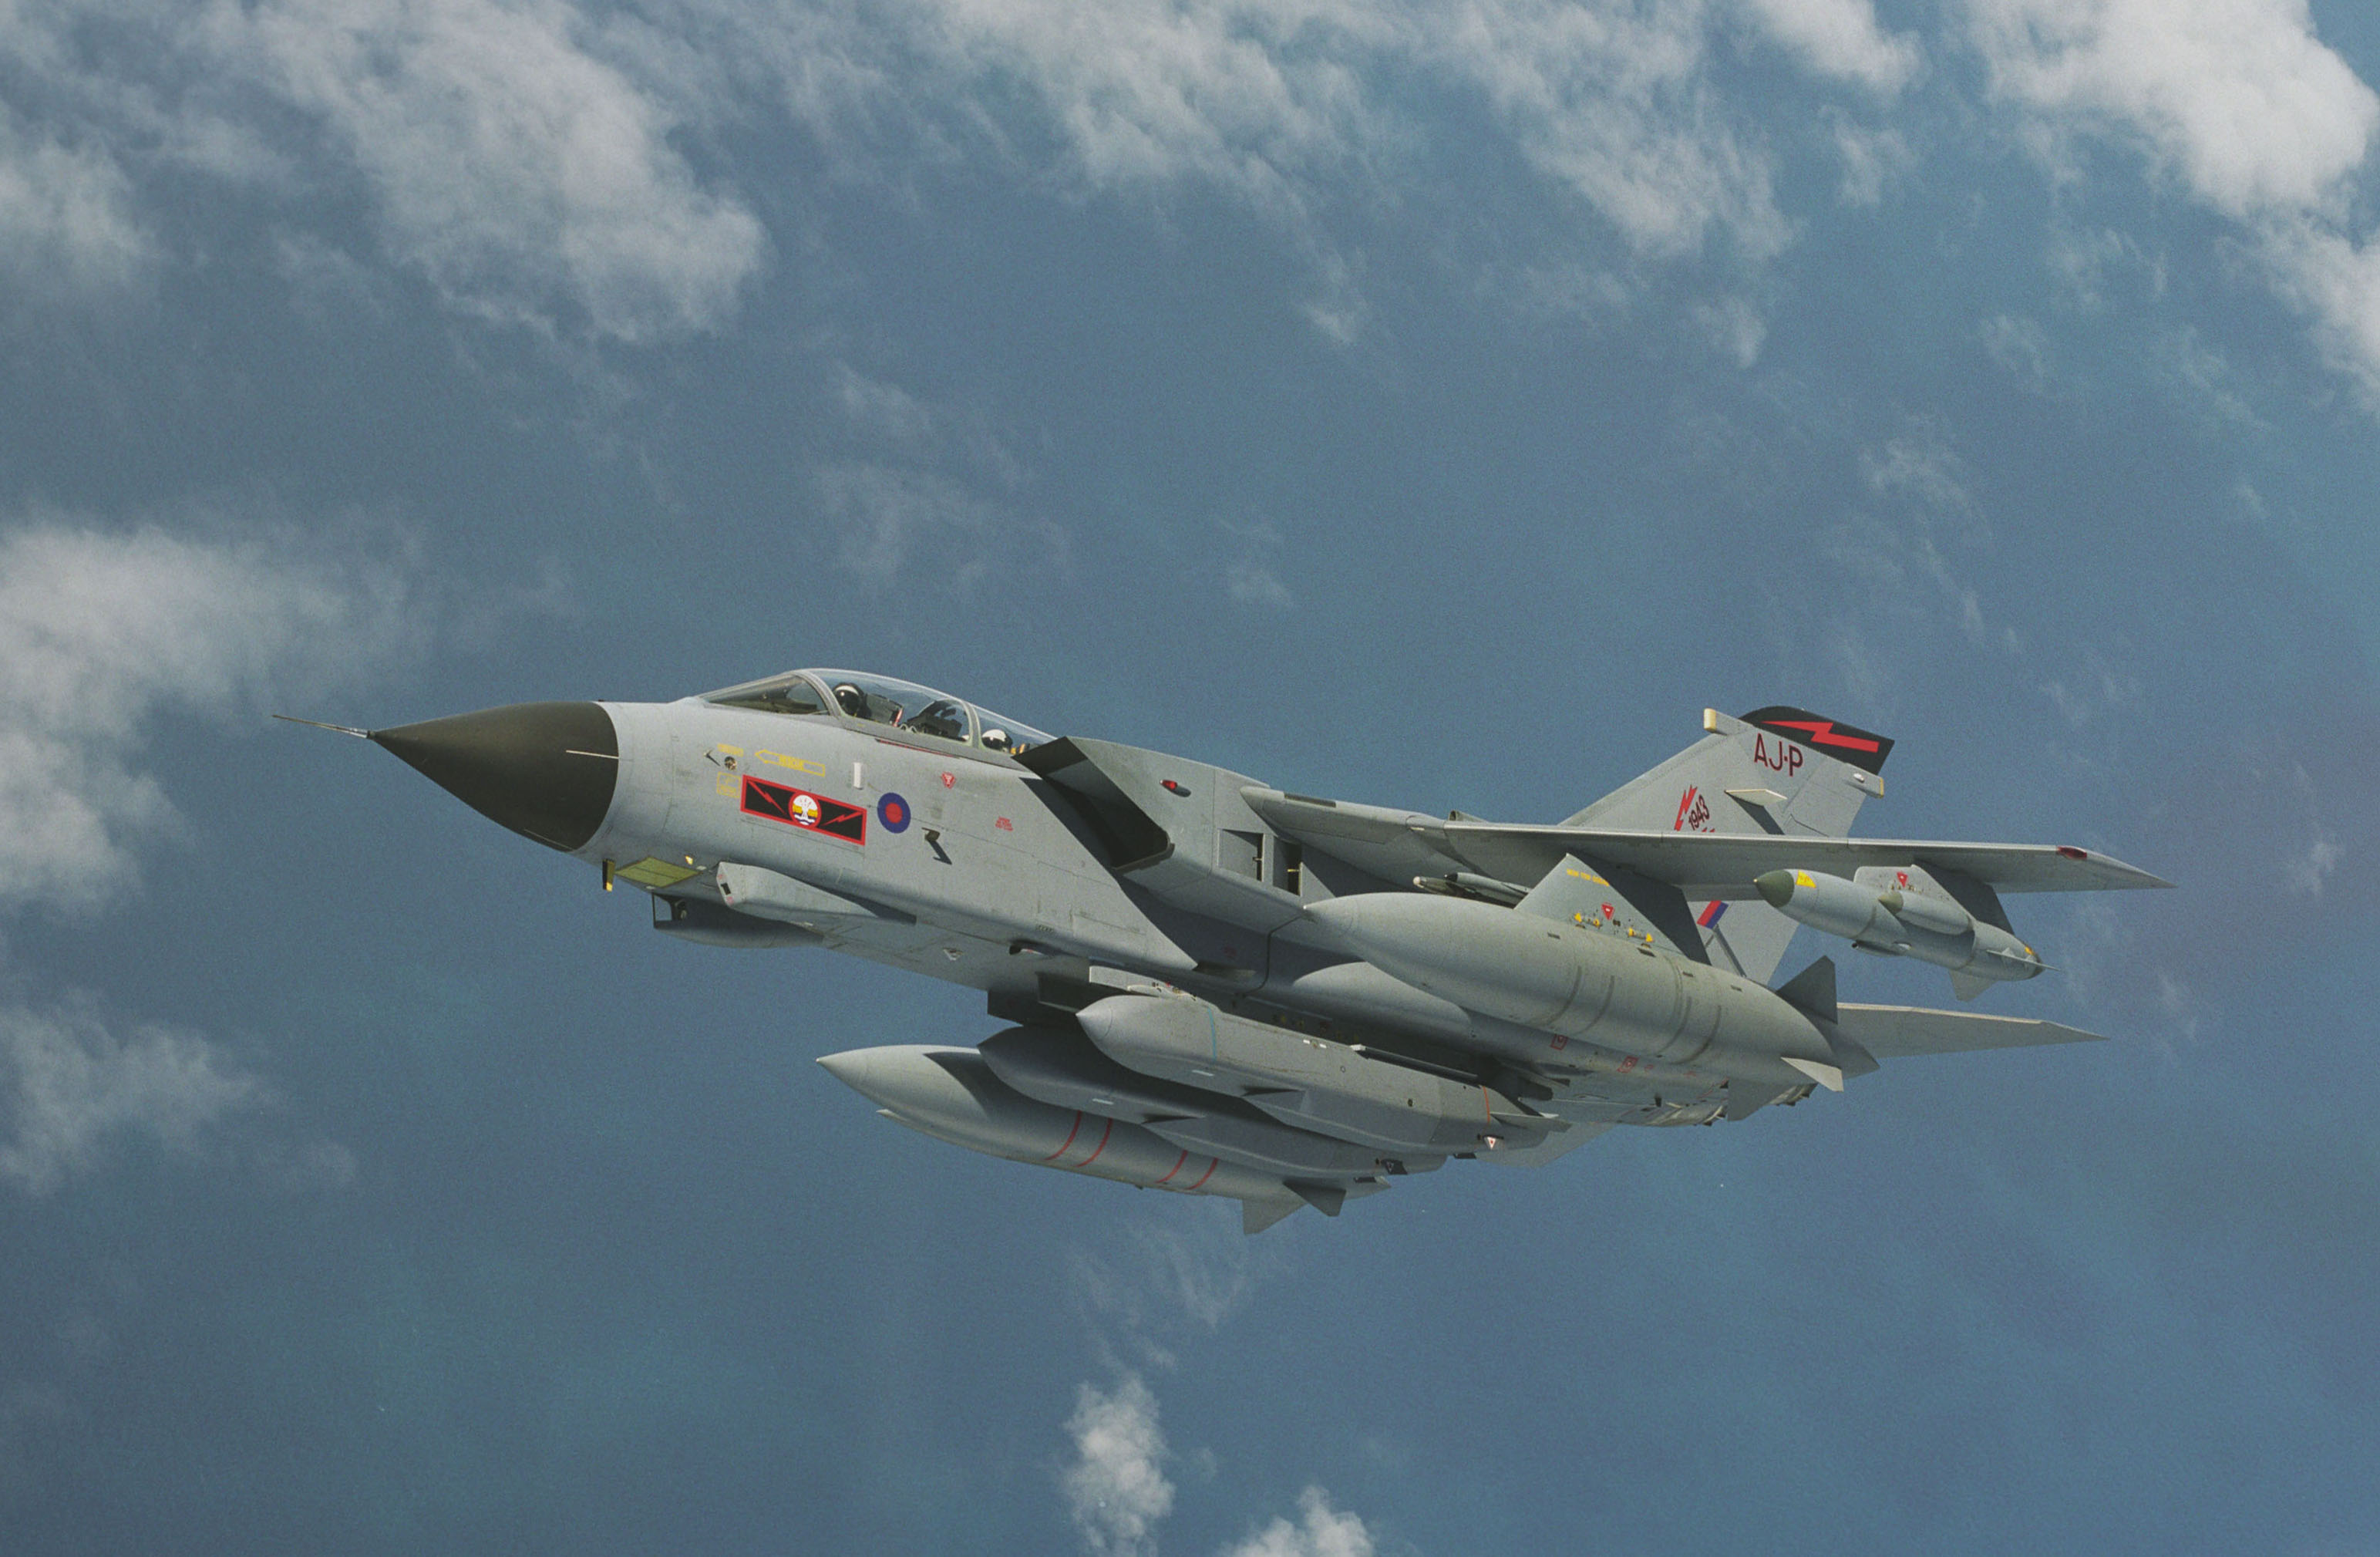 Tên lửa có tầm bắn khoảng 500 km, mang theo đầu đạn nặng 450 kg. Storm Shadow đã chứng minh khả năng hủy diệt ghê gớm của nó trong chiến tranh Libya năm 2011 với tỷ lệ tiêu diệt mục tiêu tới 97%. 